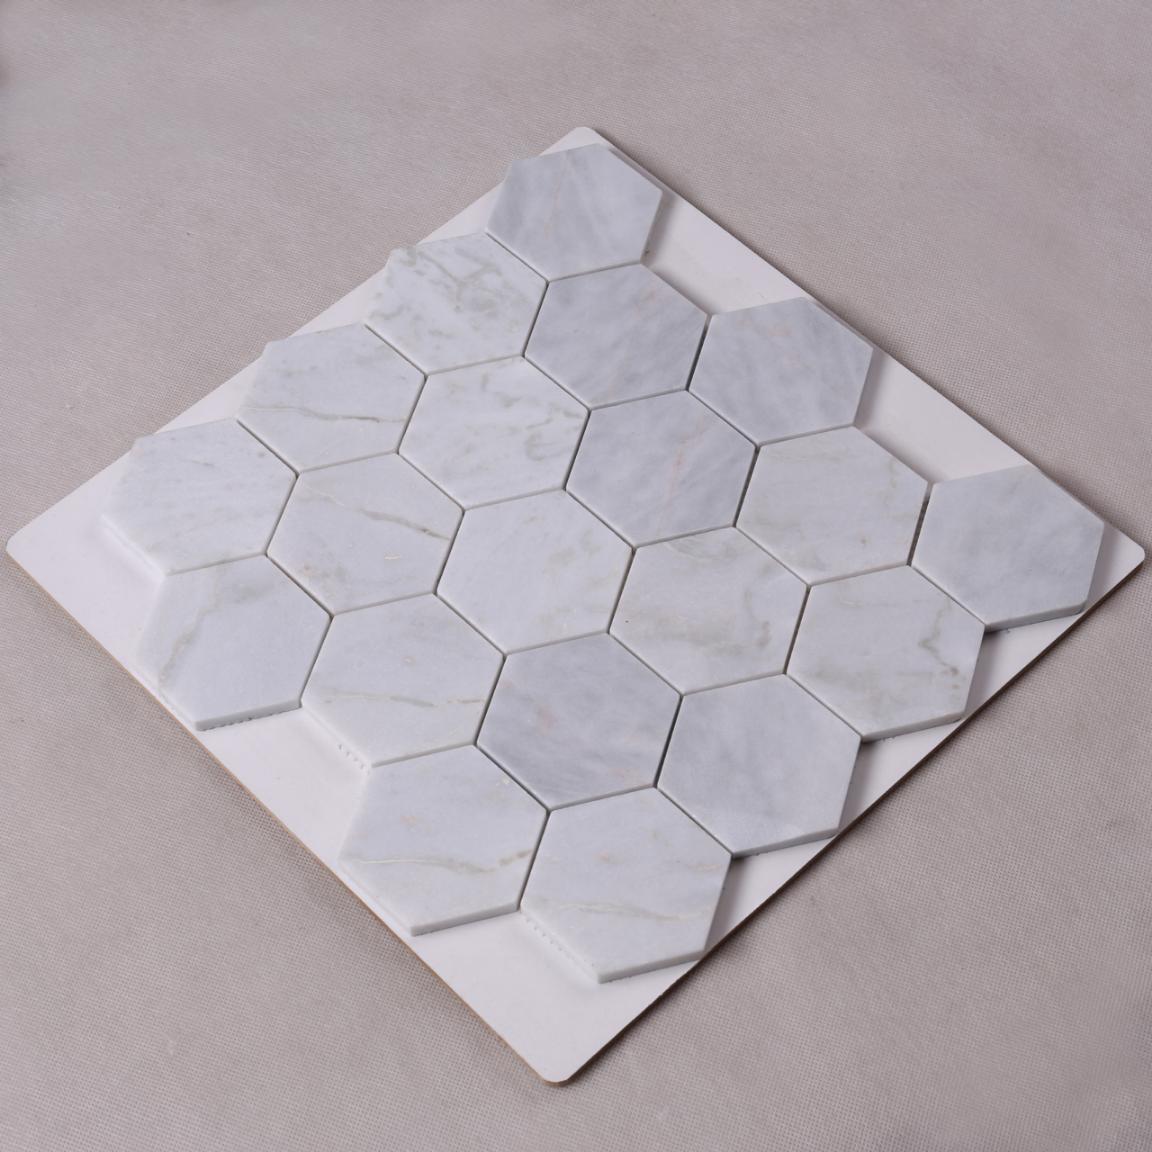 Heng Xing golden mosaic tile art Suppliers for bathroom-3